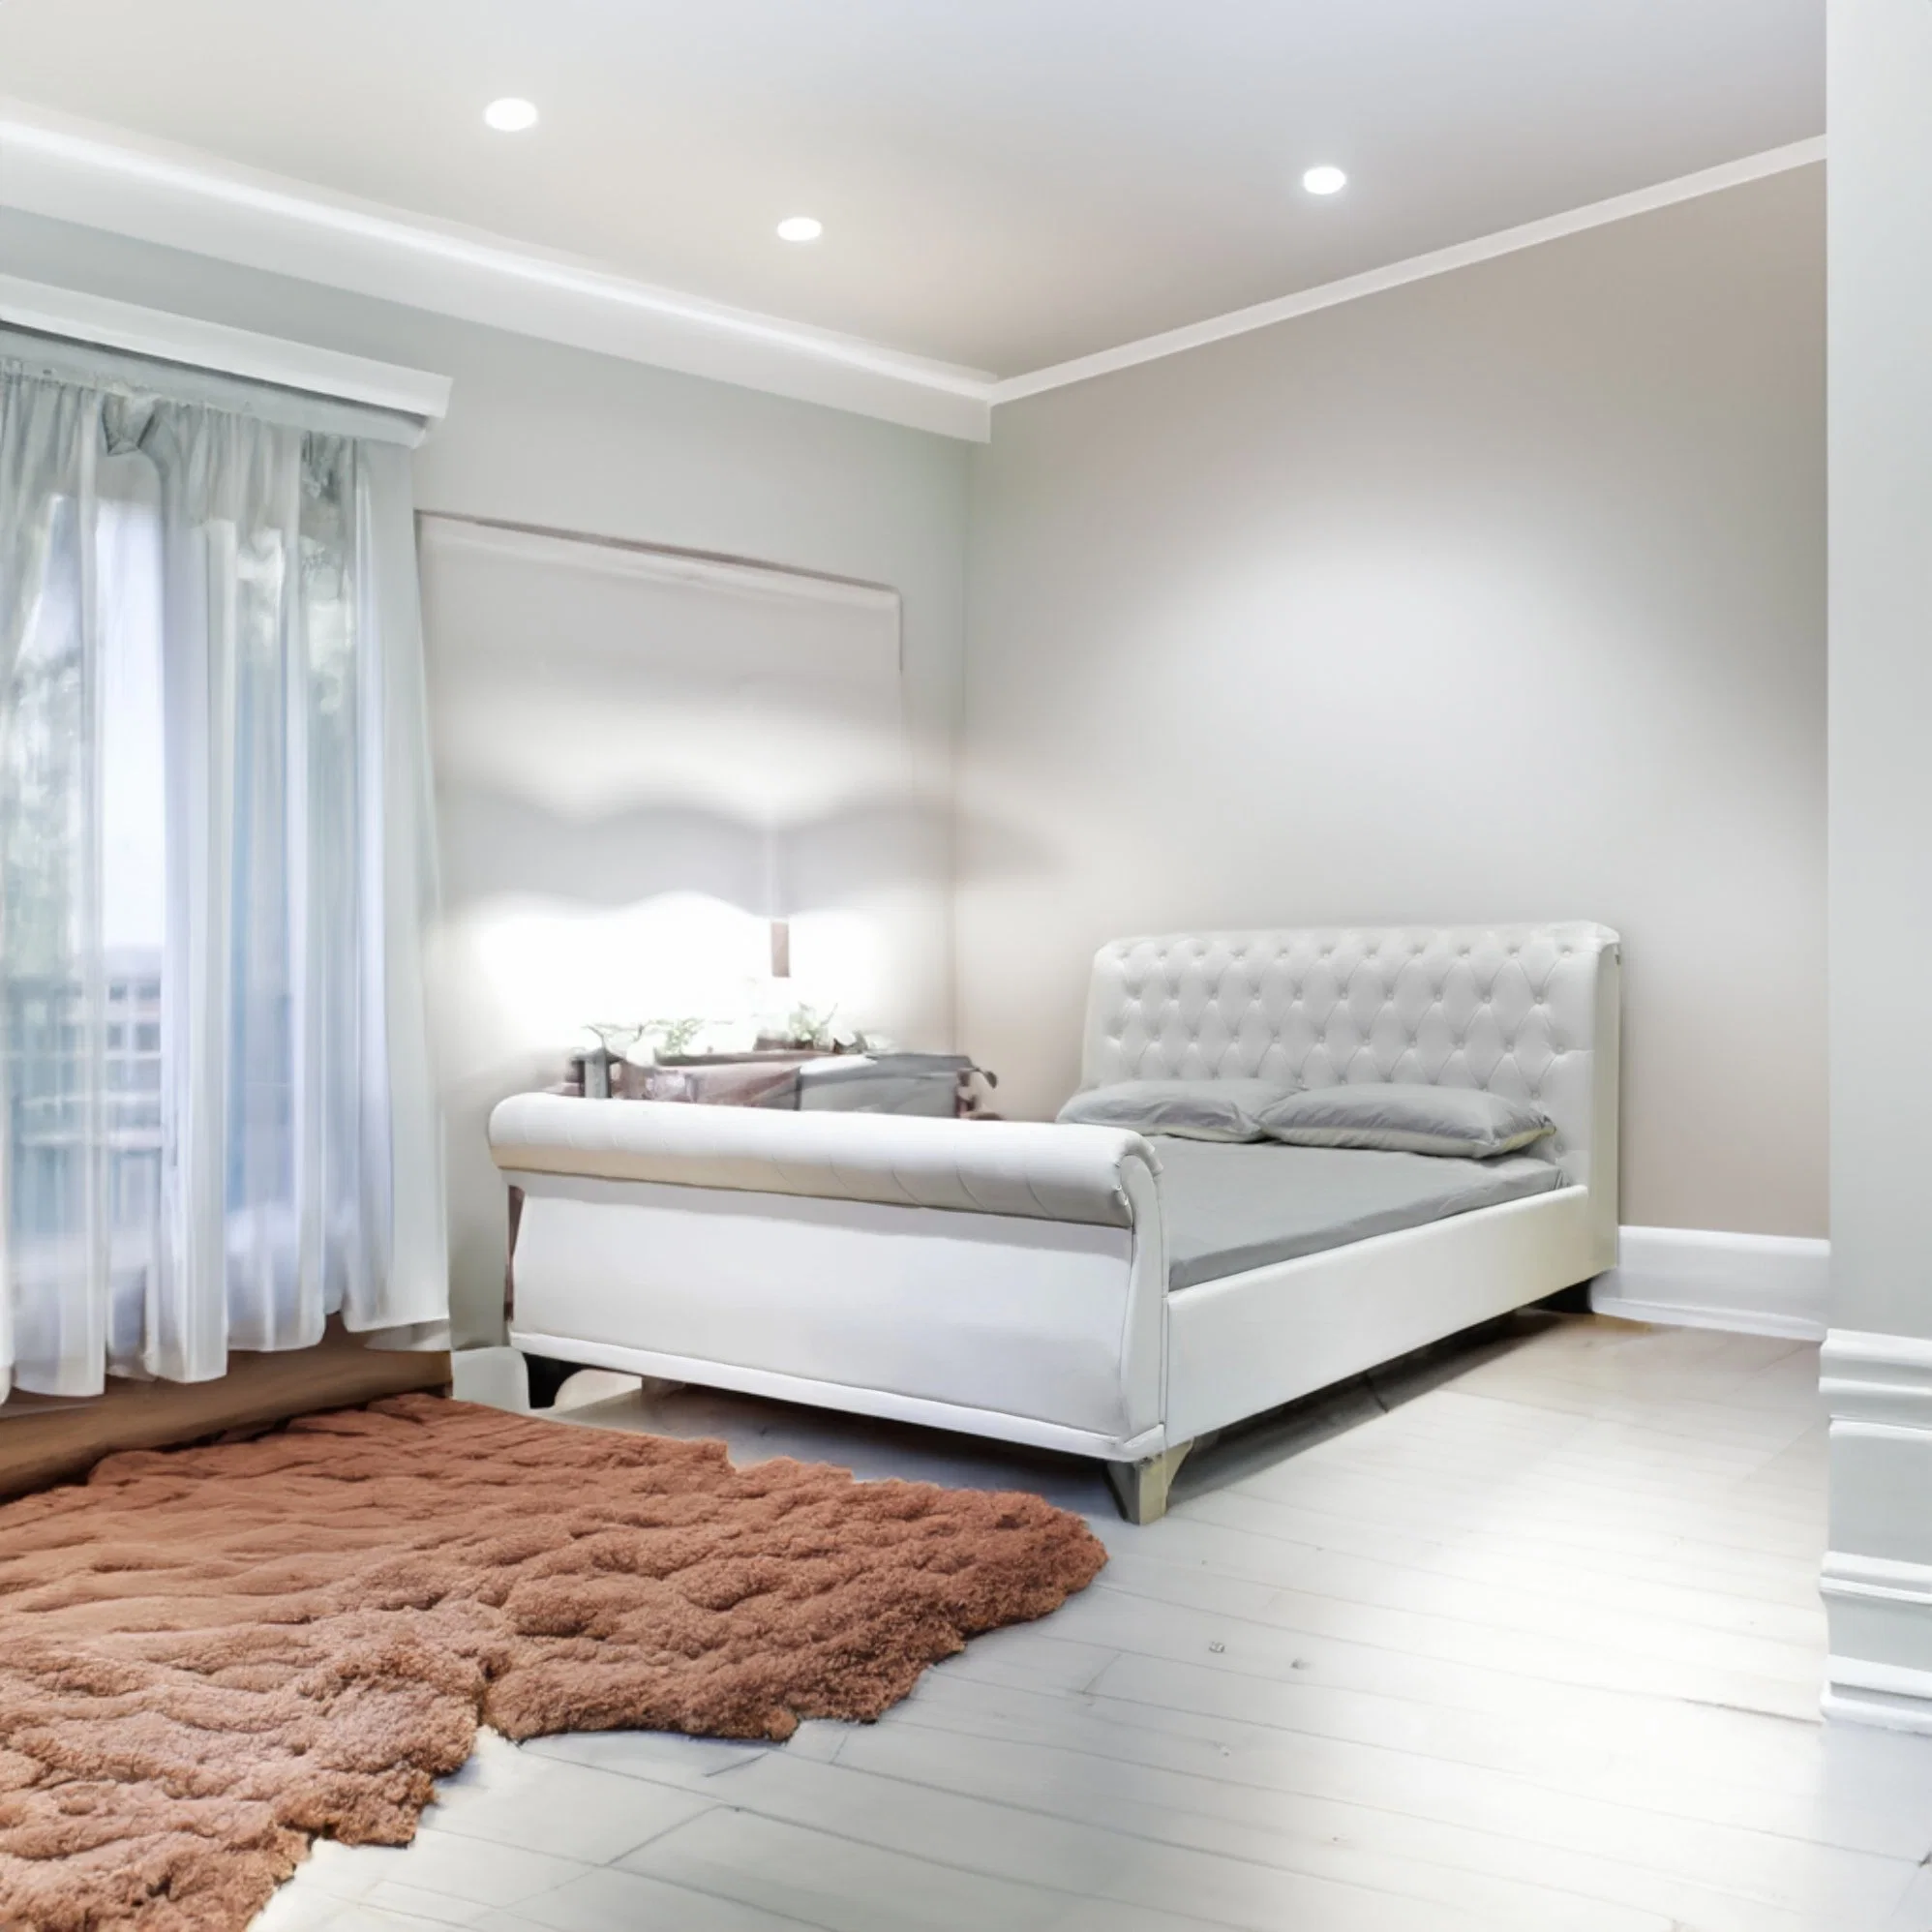 Quarto Duplo quente Americano Huayang personalizado Quarto Design Cama Sala de estar Mobiliário